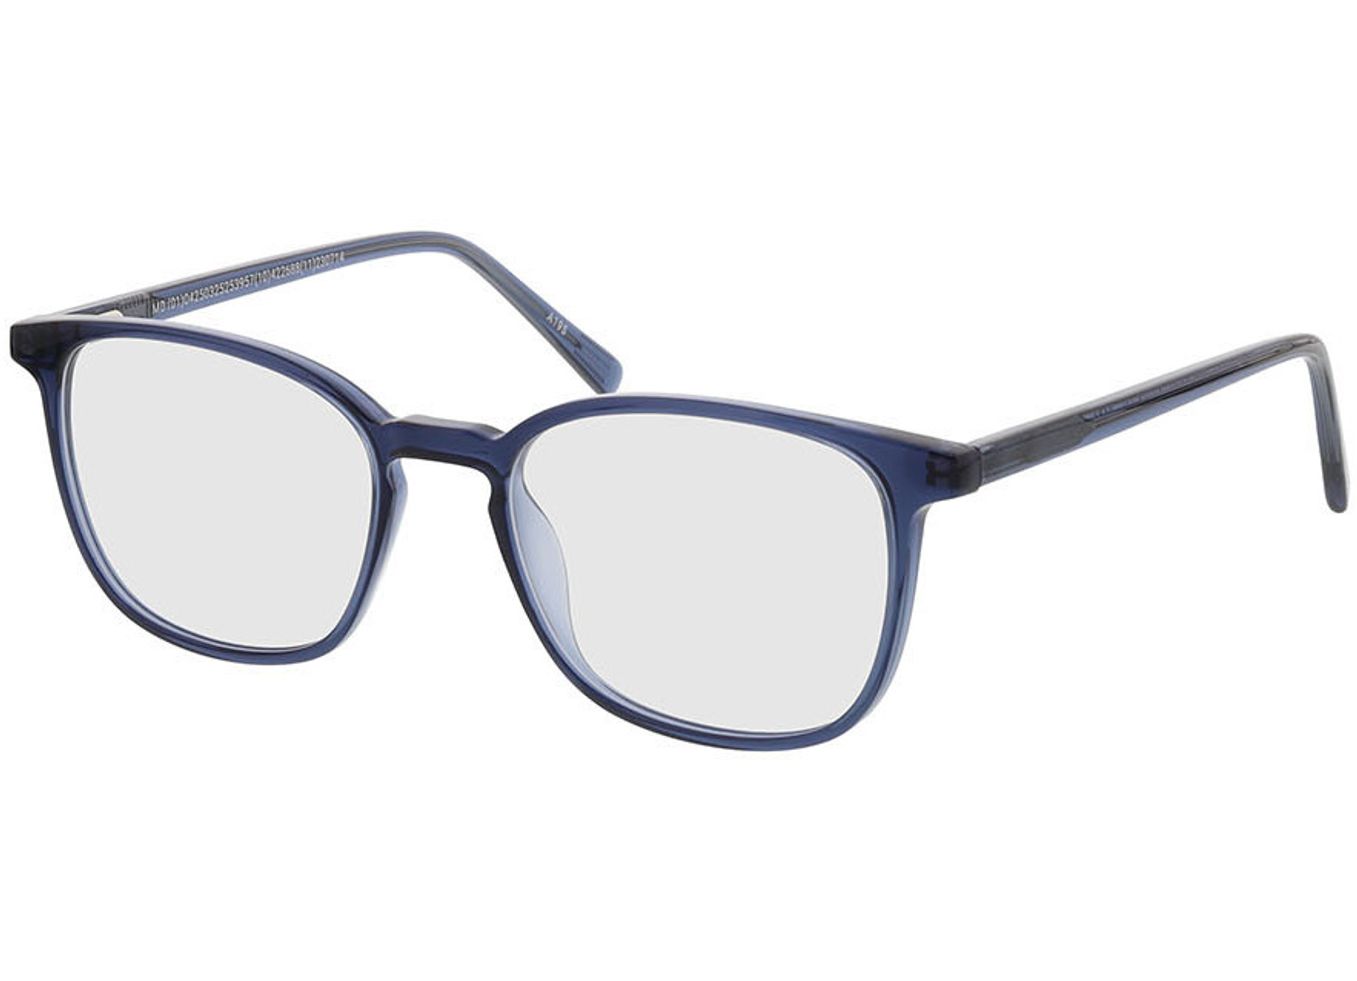 New Haven - blau Brillengestell inkl. Gläser, Vollrand, Rechteckig von Brille24 Collection